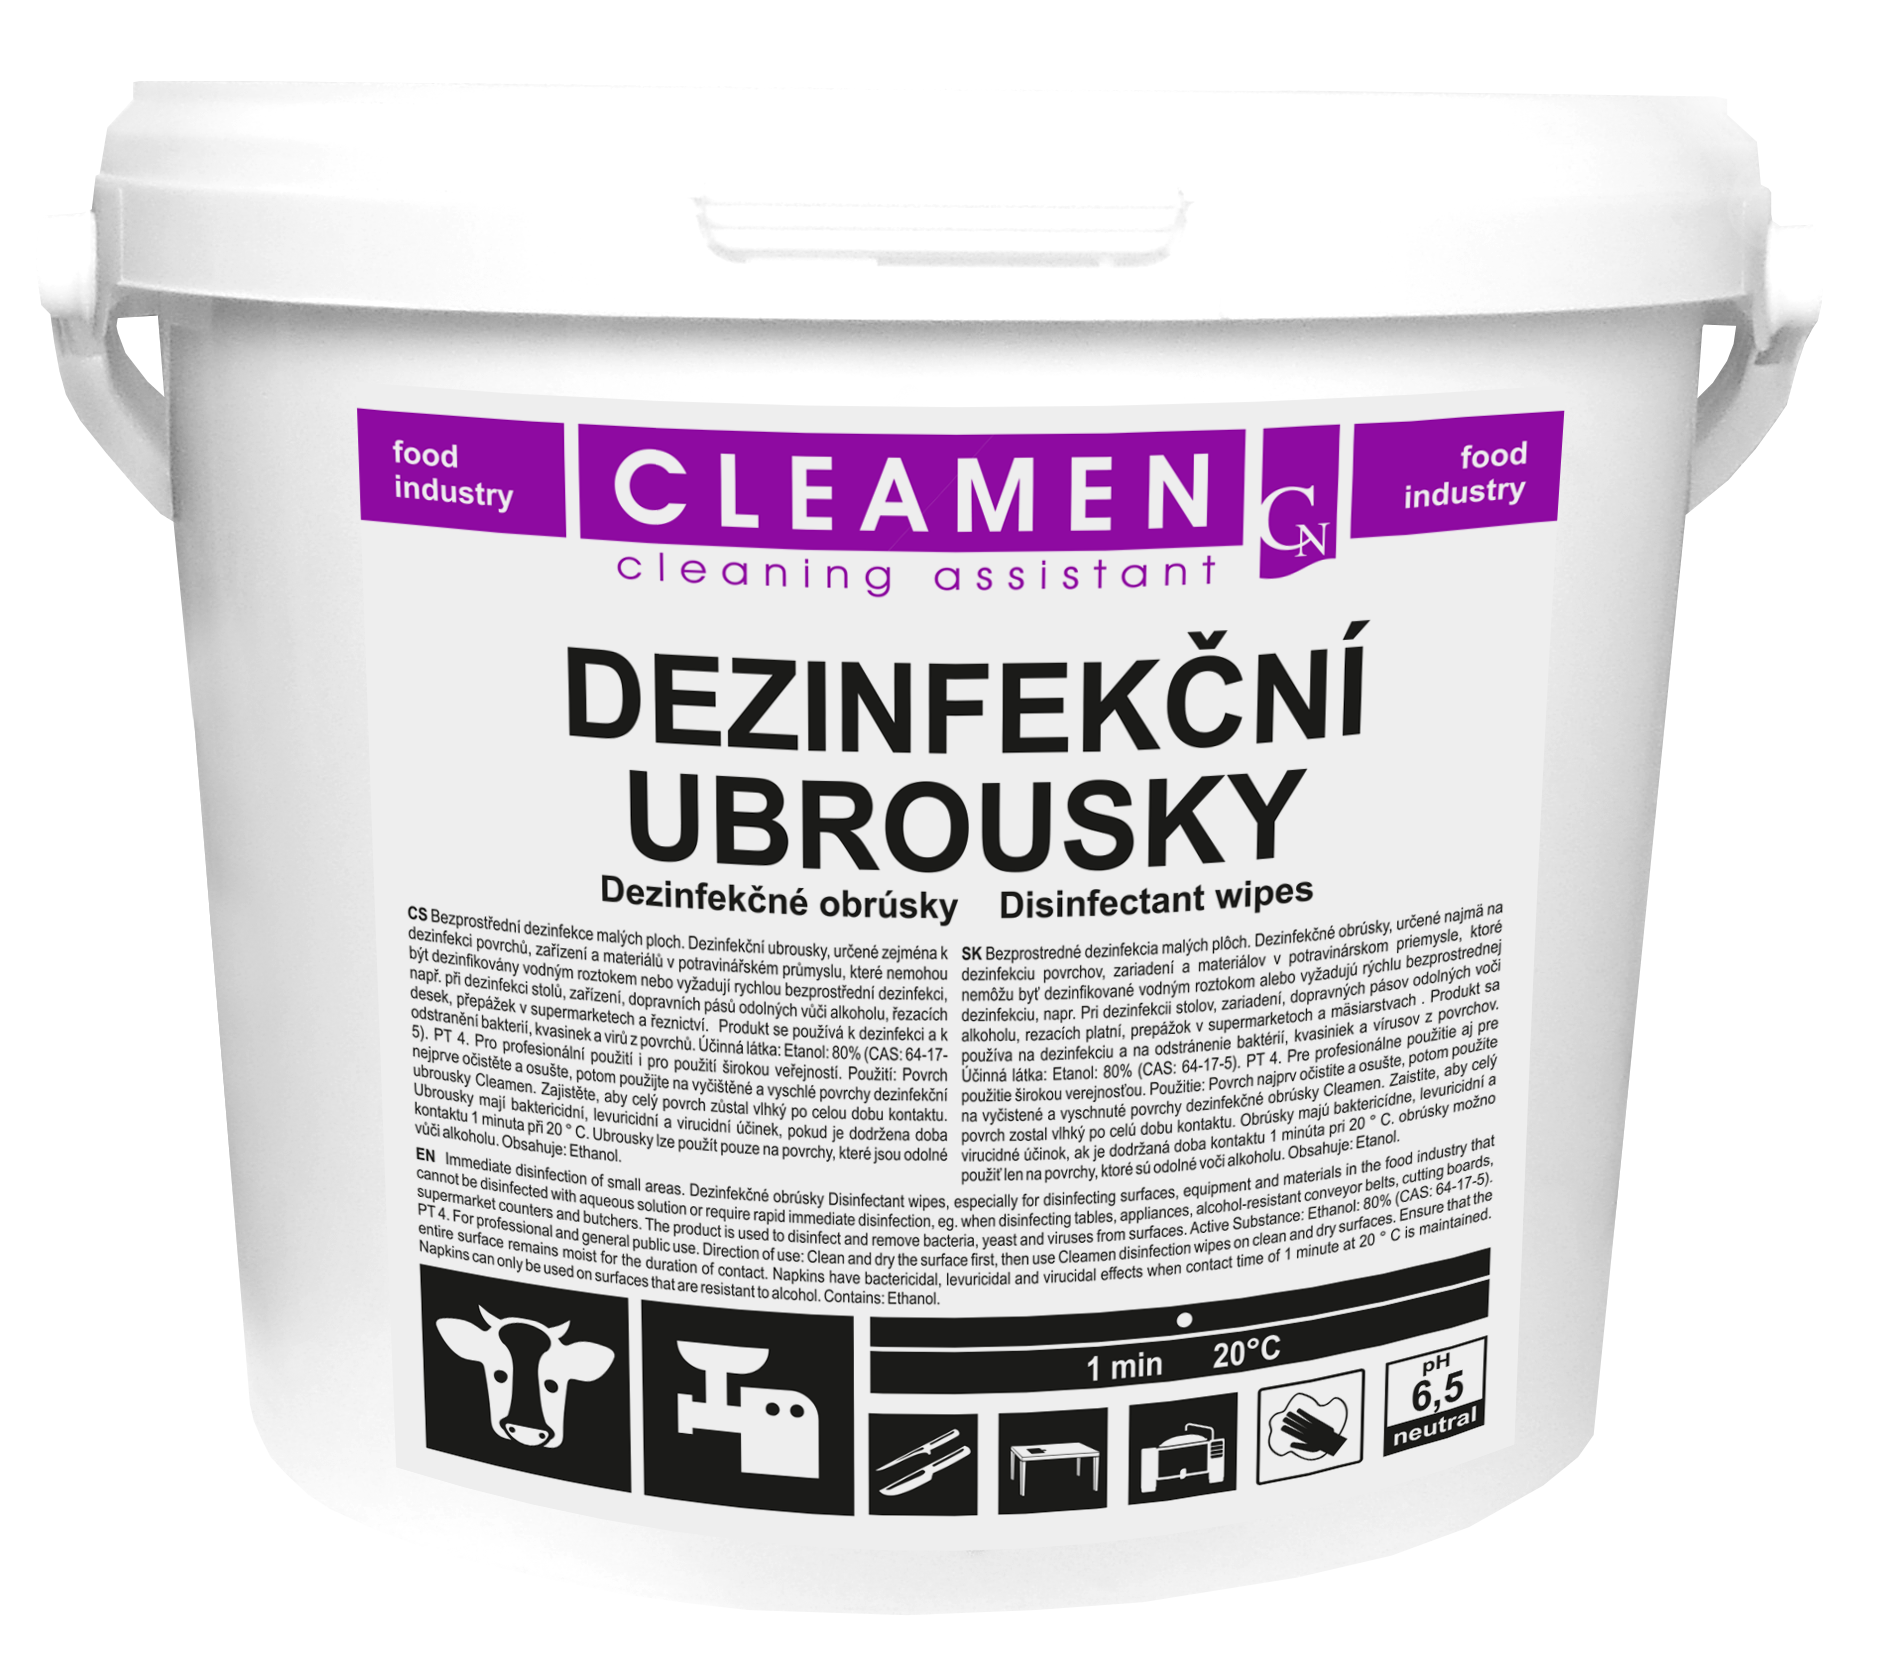 Dezinfekční ubrousky Cleamen 150 útržků (29x18cm) virucidní (80% alkoholu)